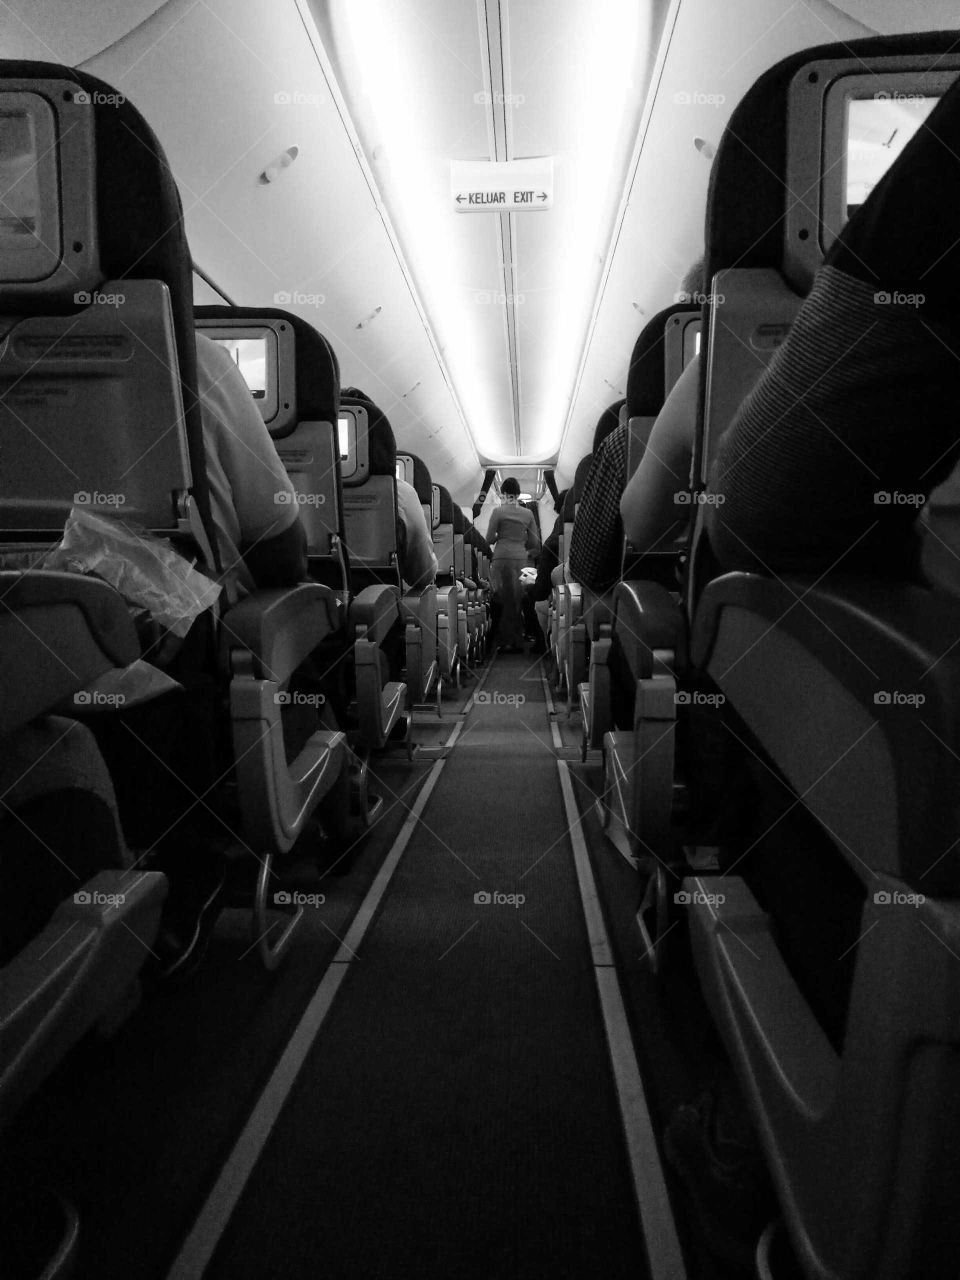 aisle, airplane